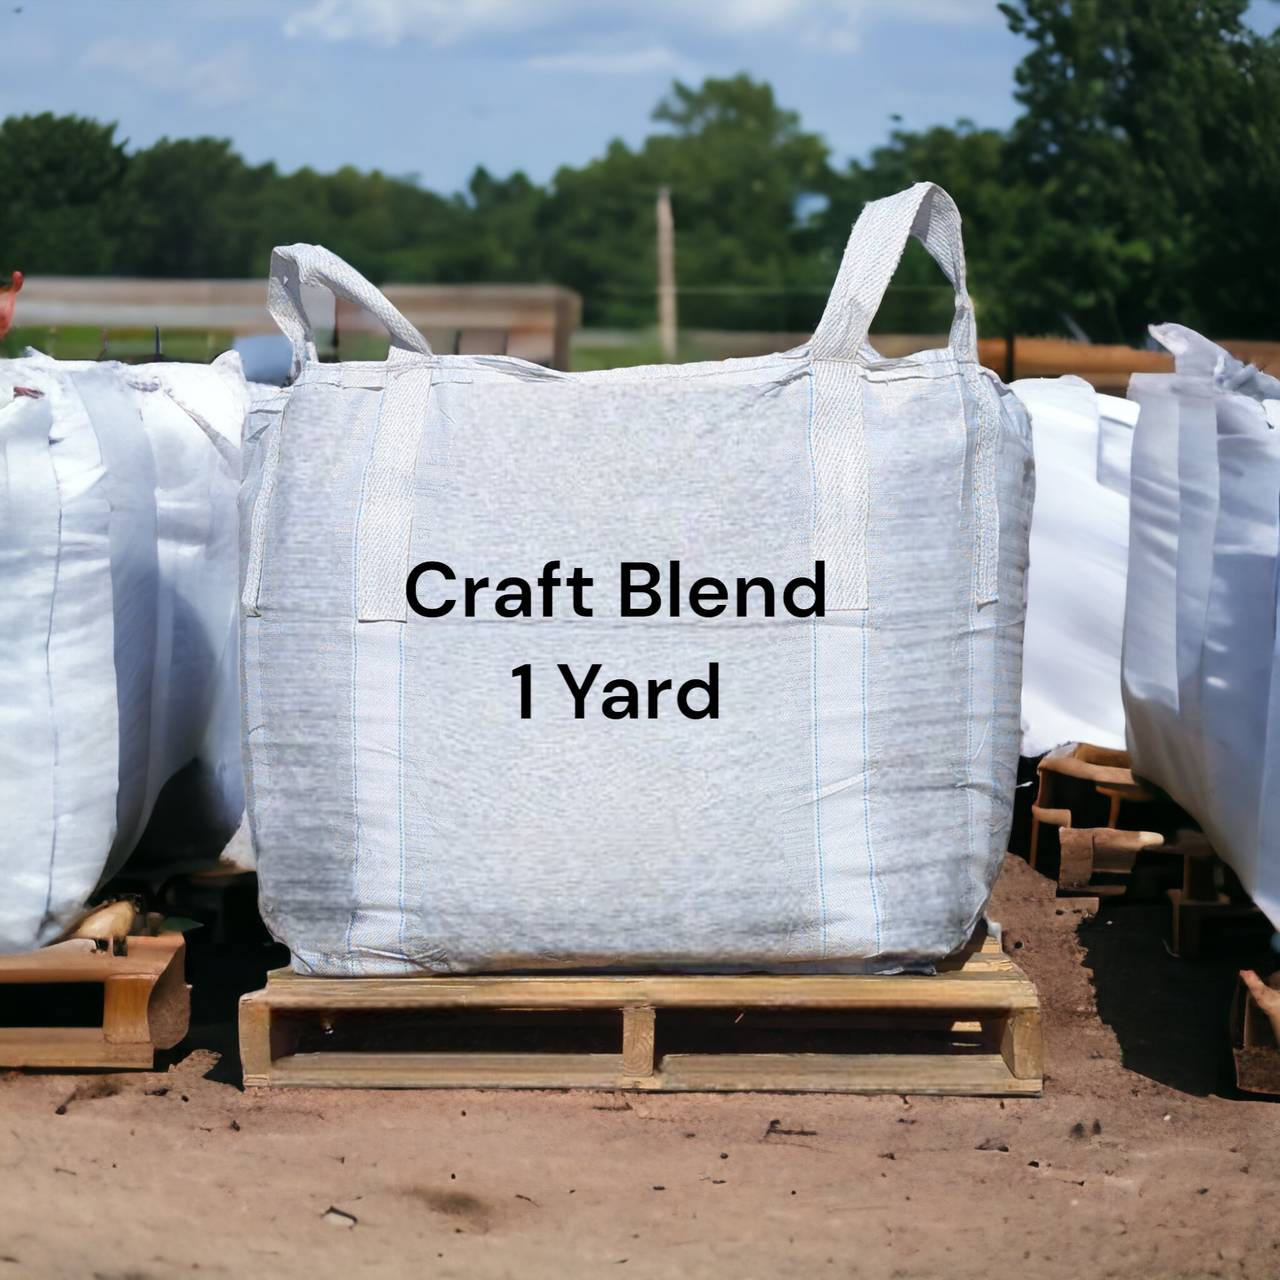 BuildASoil Craft Blend - Nutrient Pack